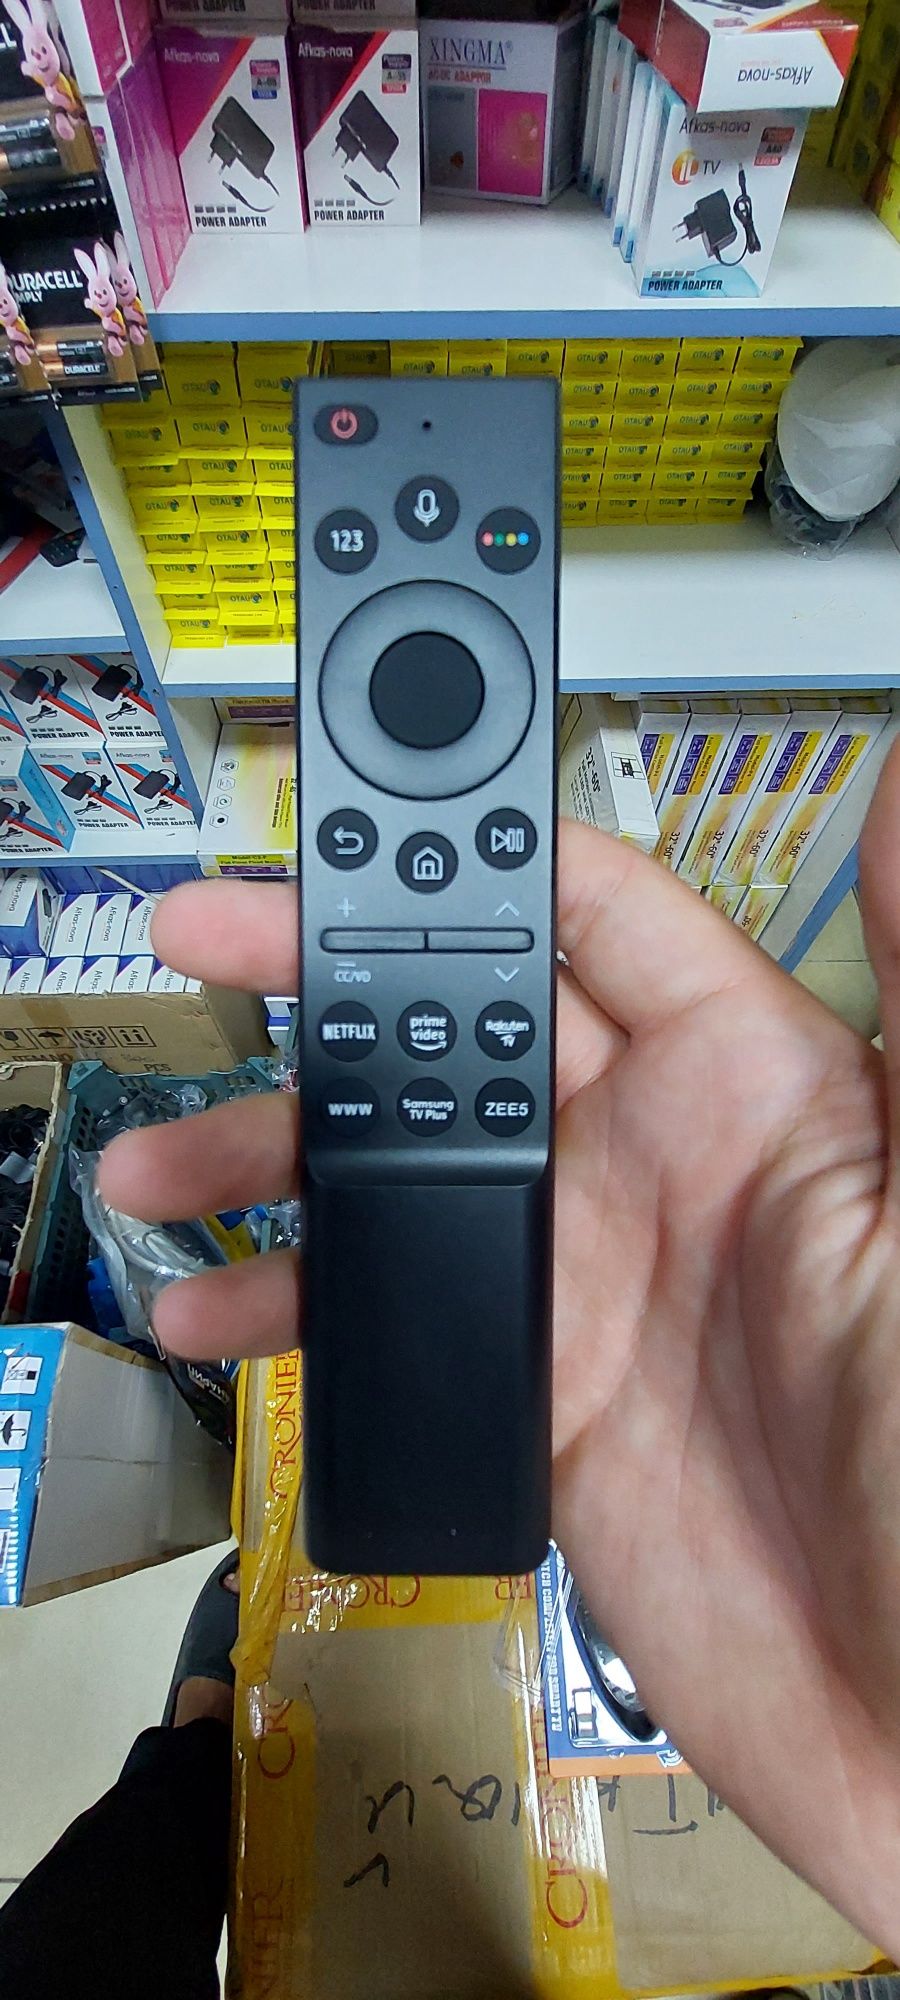 Пульт для Samsung Smart TV RM-G2500 V5 с голосовым управлением